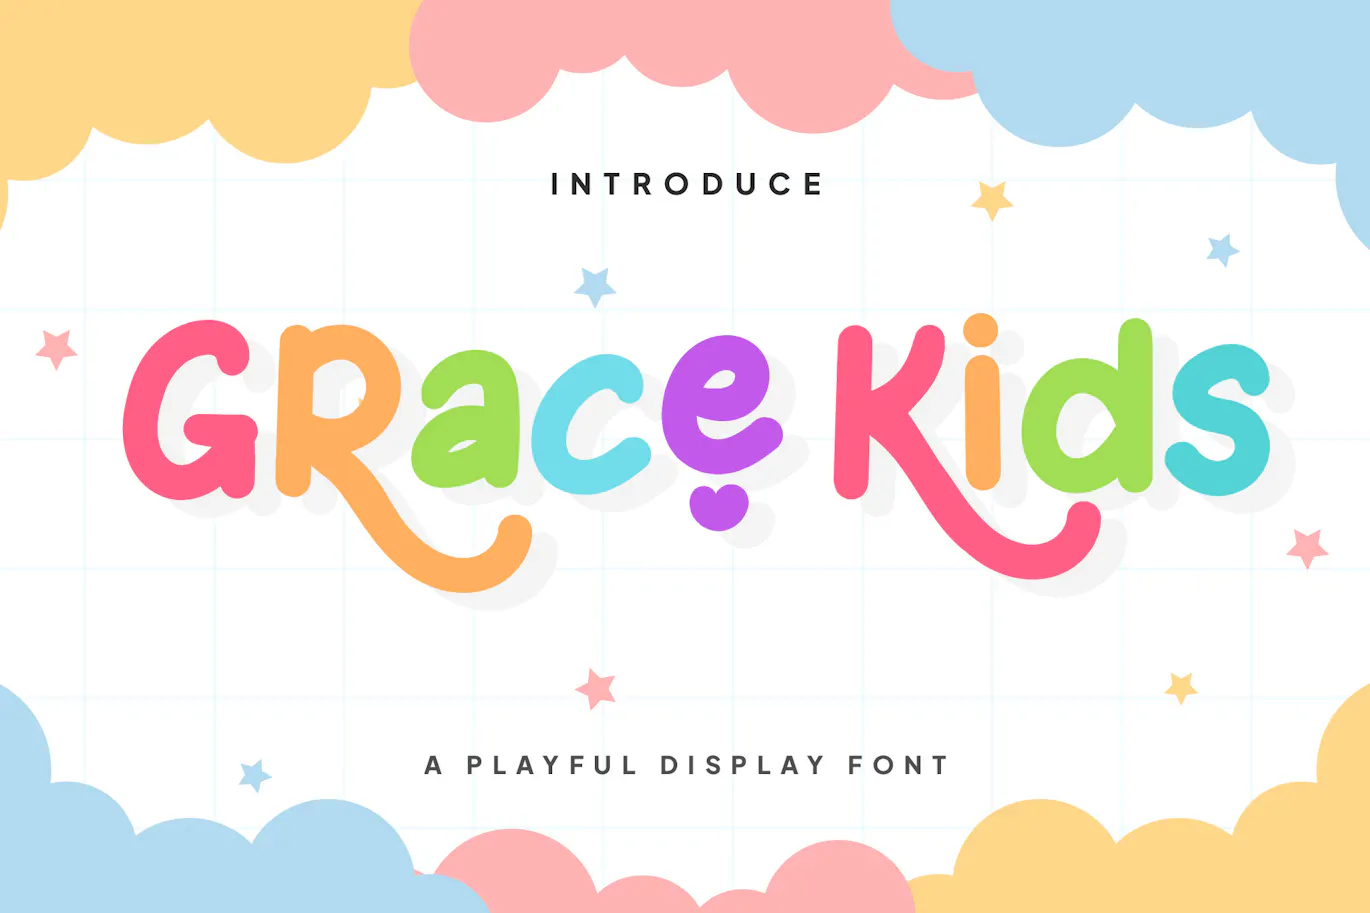 欢快而俏皮的装饰字体 - Grace Kids - Playful Display Font 设计字体 第1张